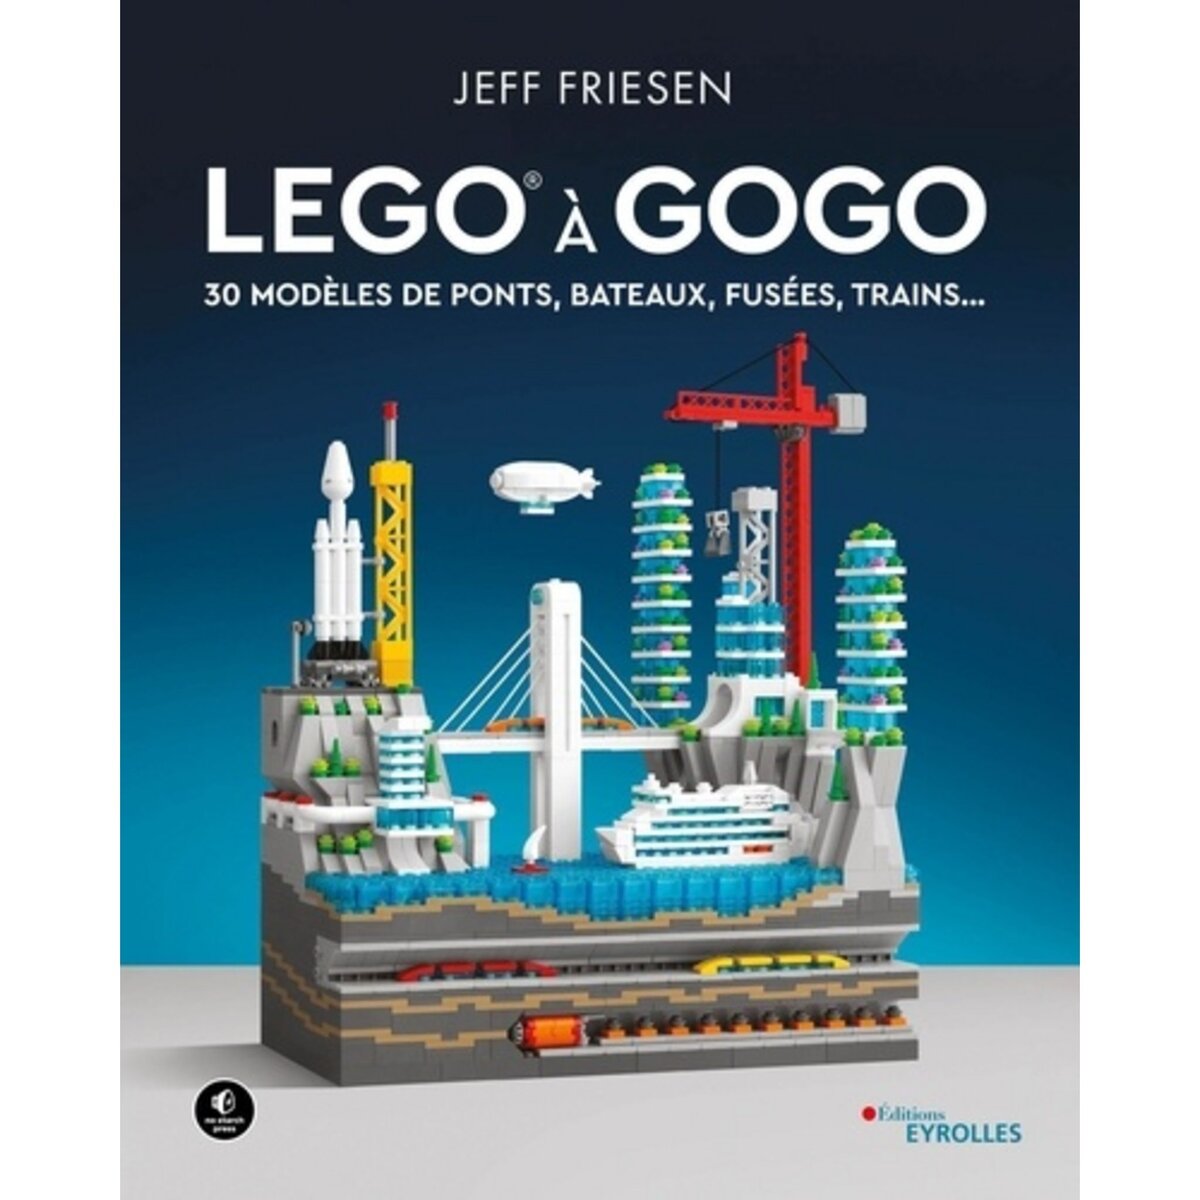  LEGO A GOGO. 30 MODELES DE PONTS, BATEAUX, FUSEES, TRAINS..., Friesen Jeff